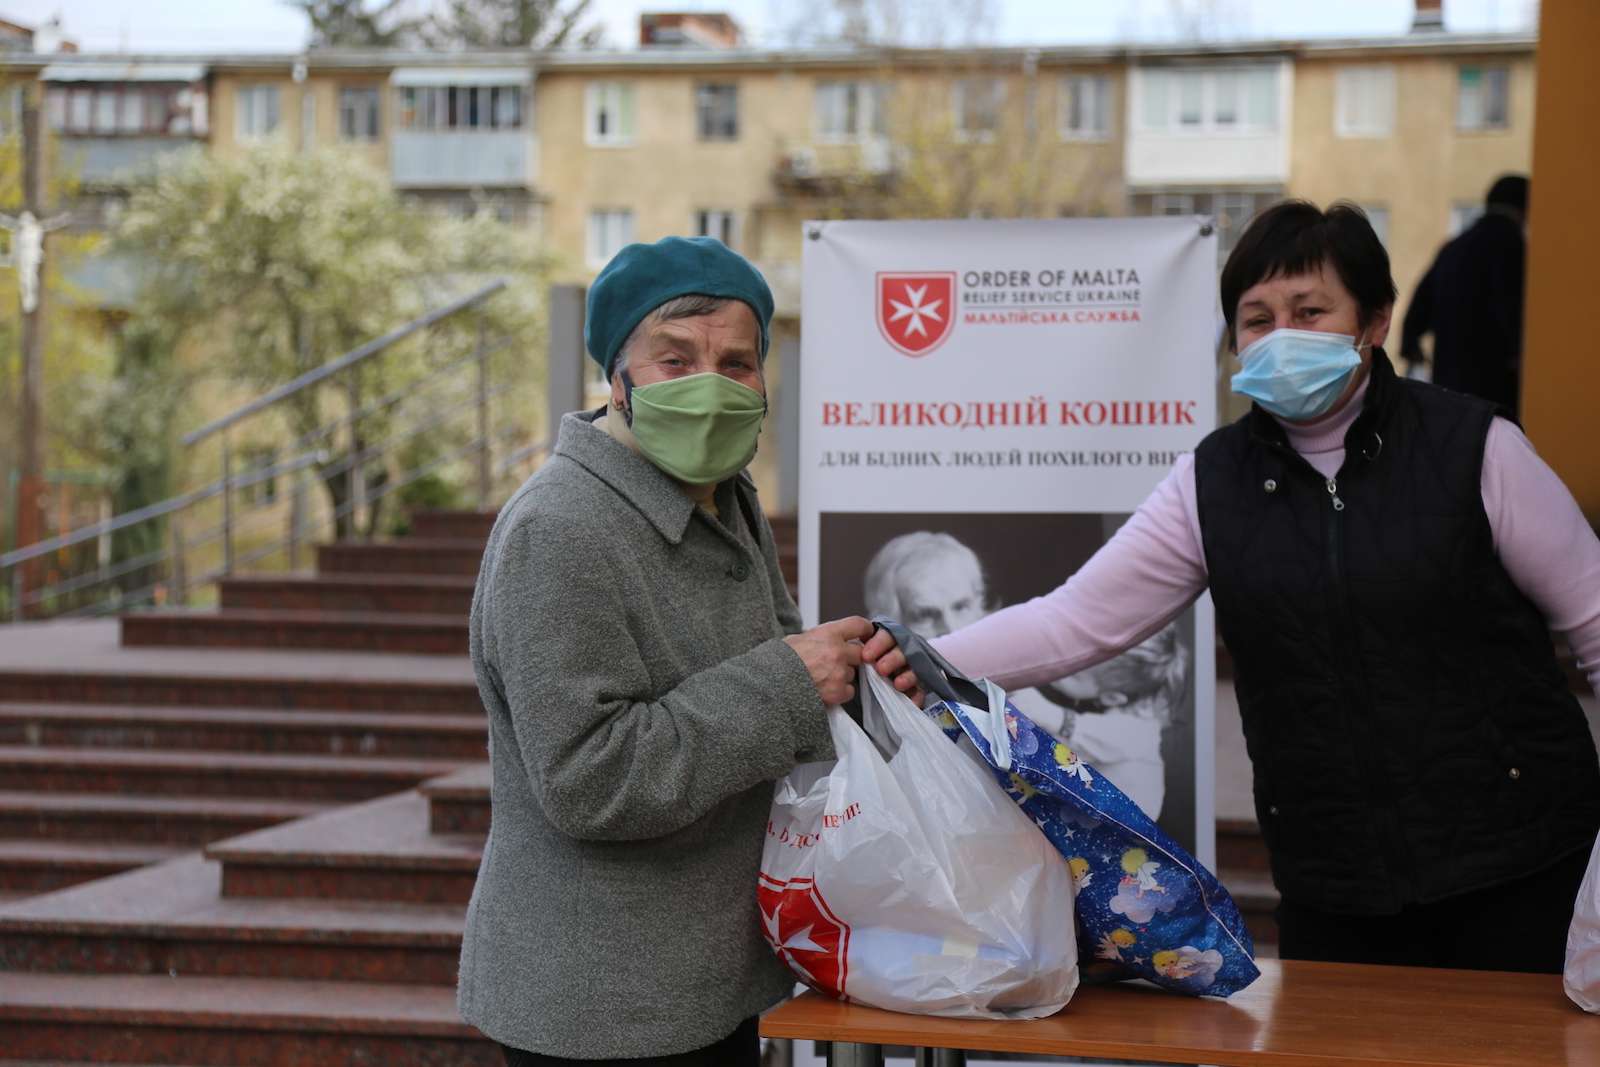 In der Ukraine organisiert das Hilfskorps des Malteserordens erste Hilfsmaßnahmen